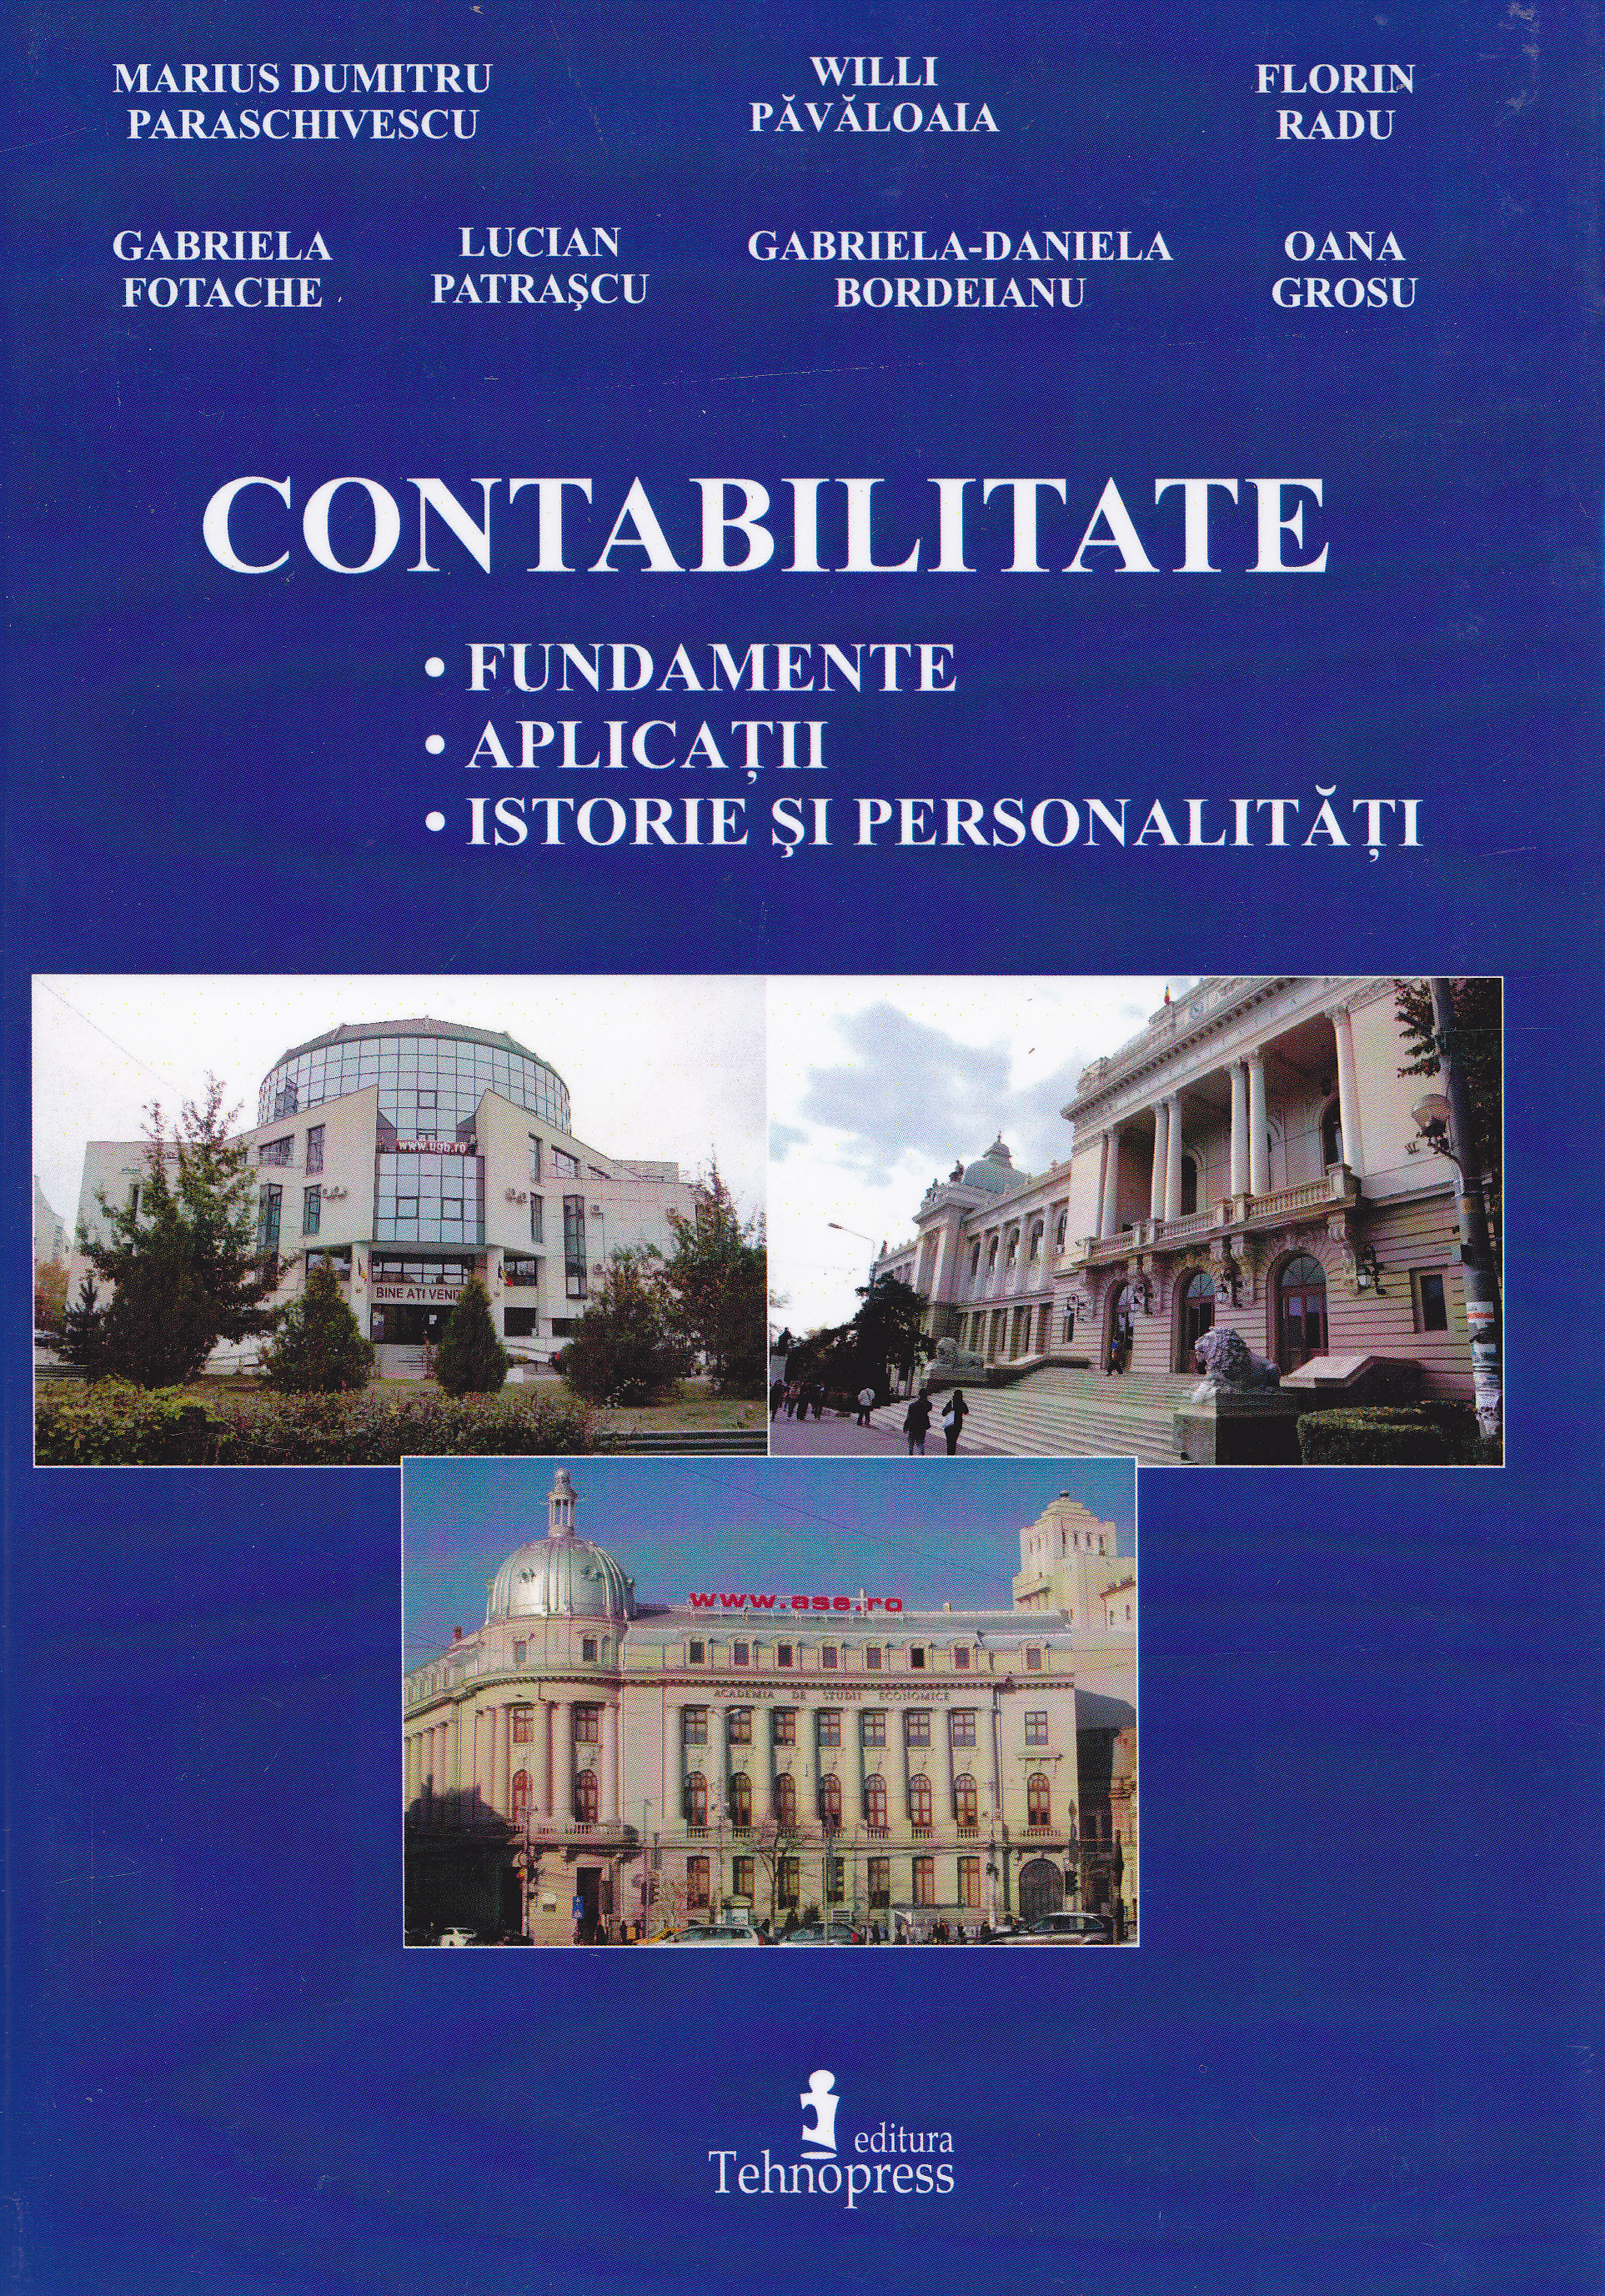 Contabilitate: fundamente, aplicatii, istorie si personalitati - Marius Dumitru Paraschivescu